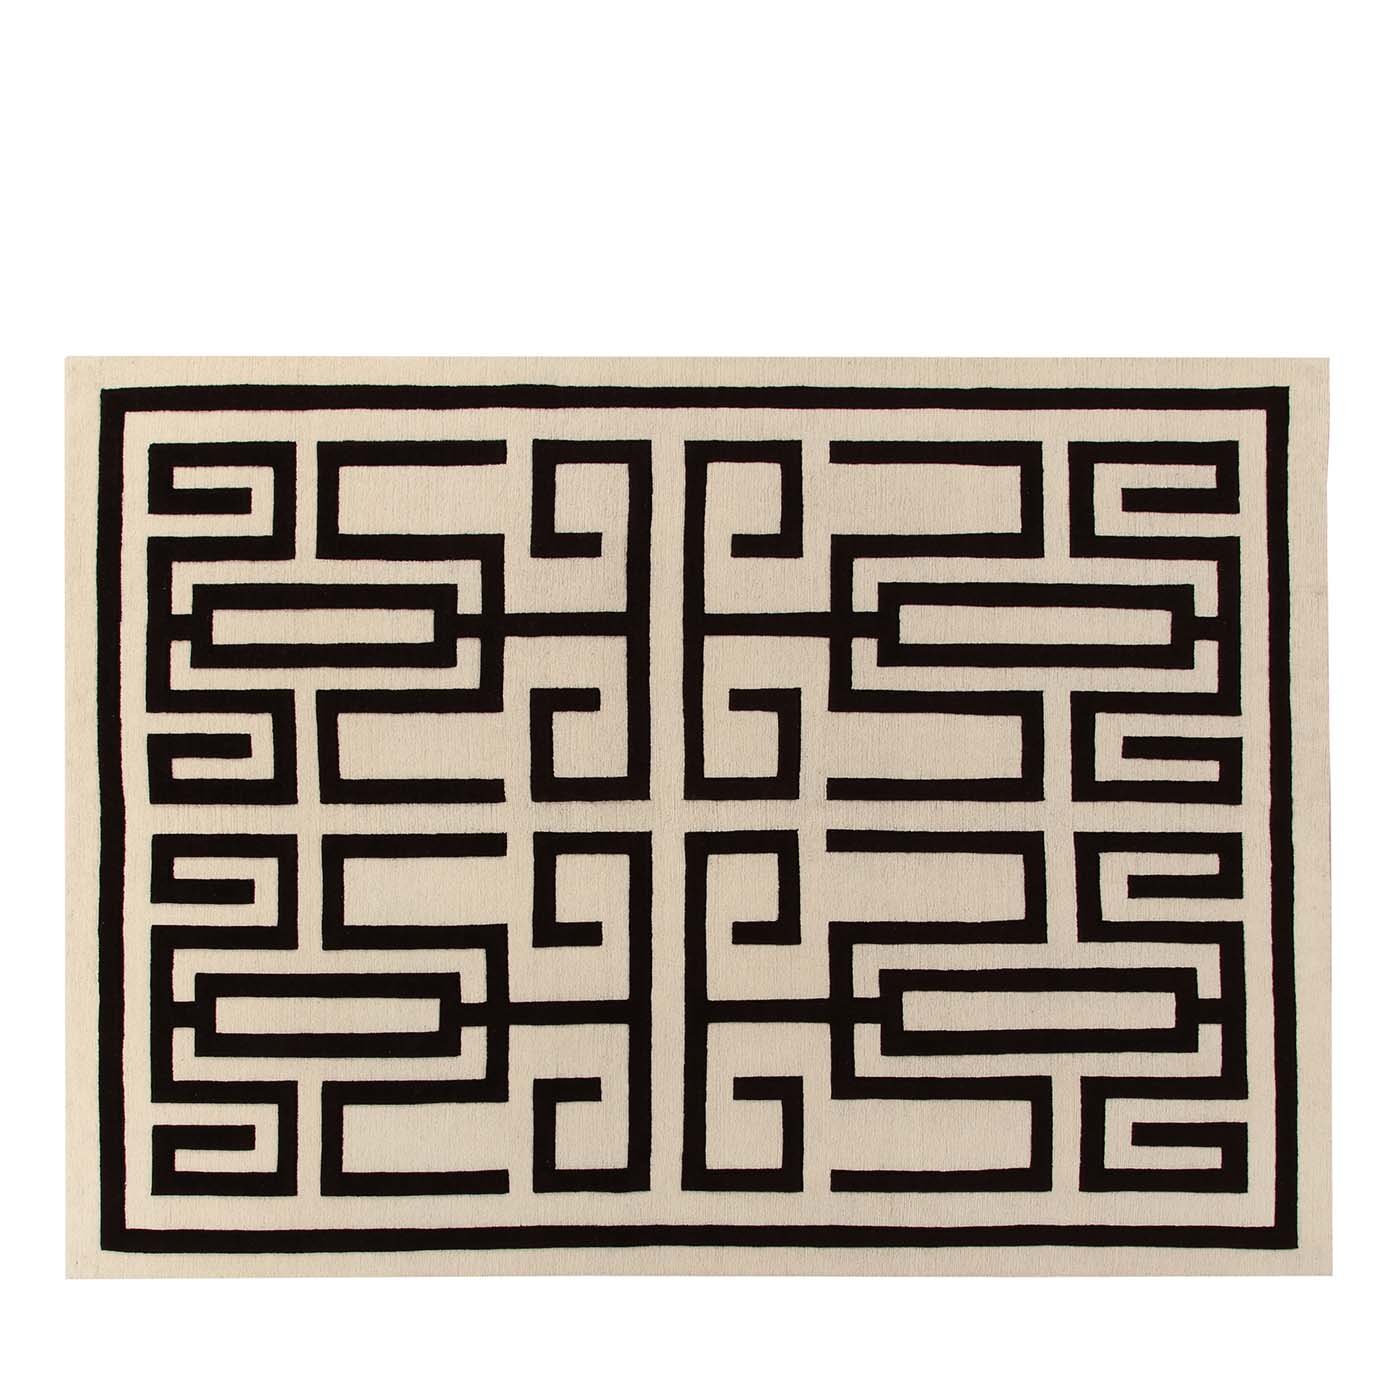 Labirinto Black Carpet by Gio Ponti - Main view